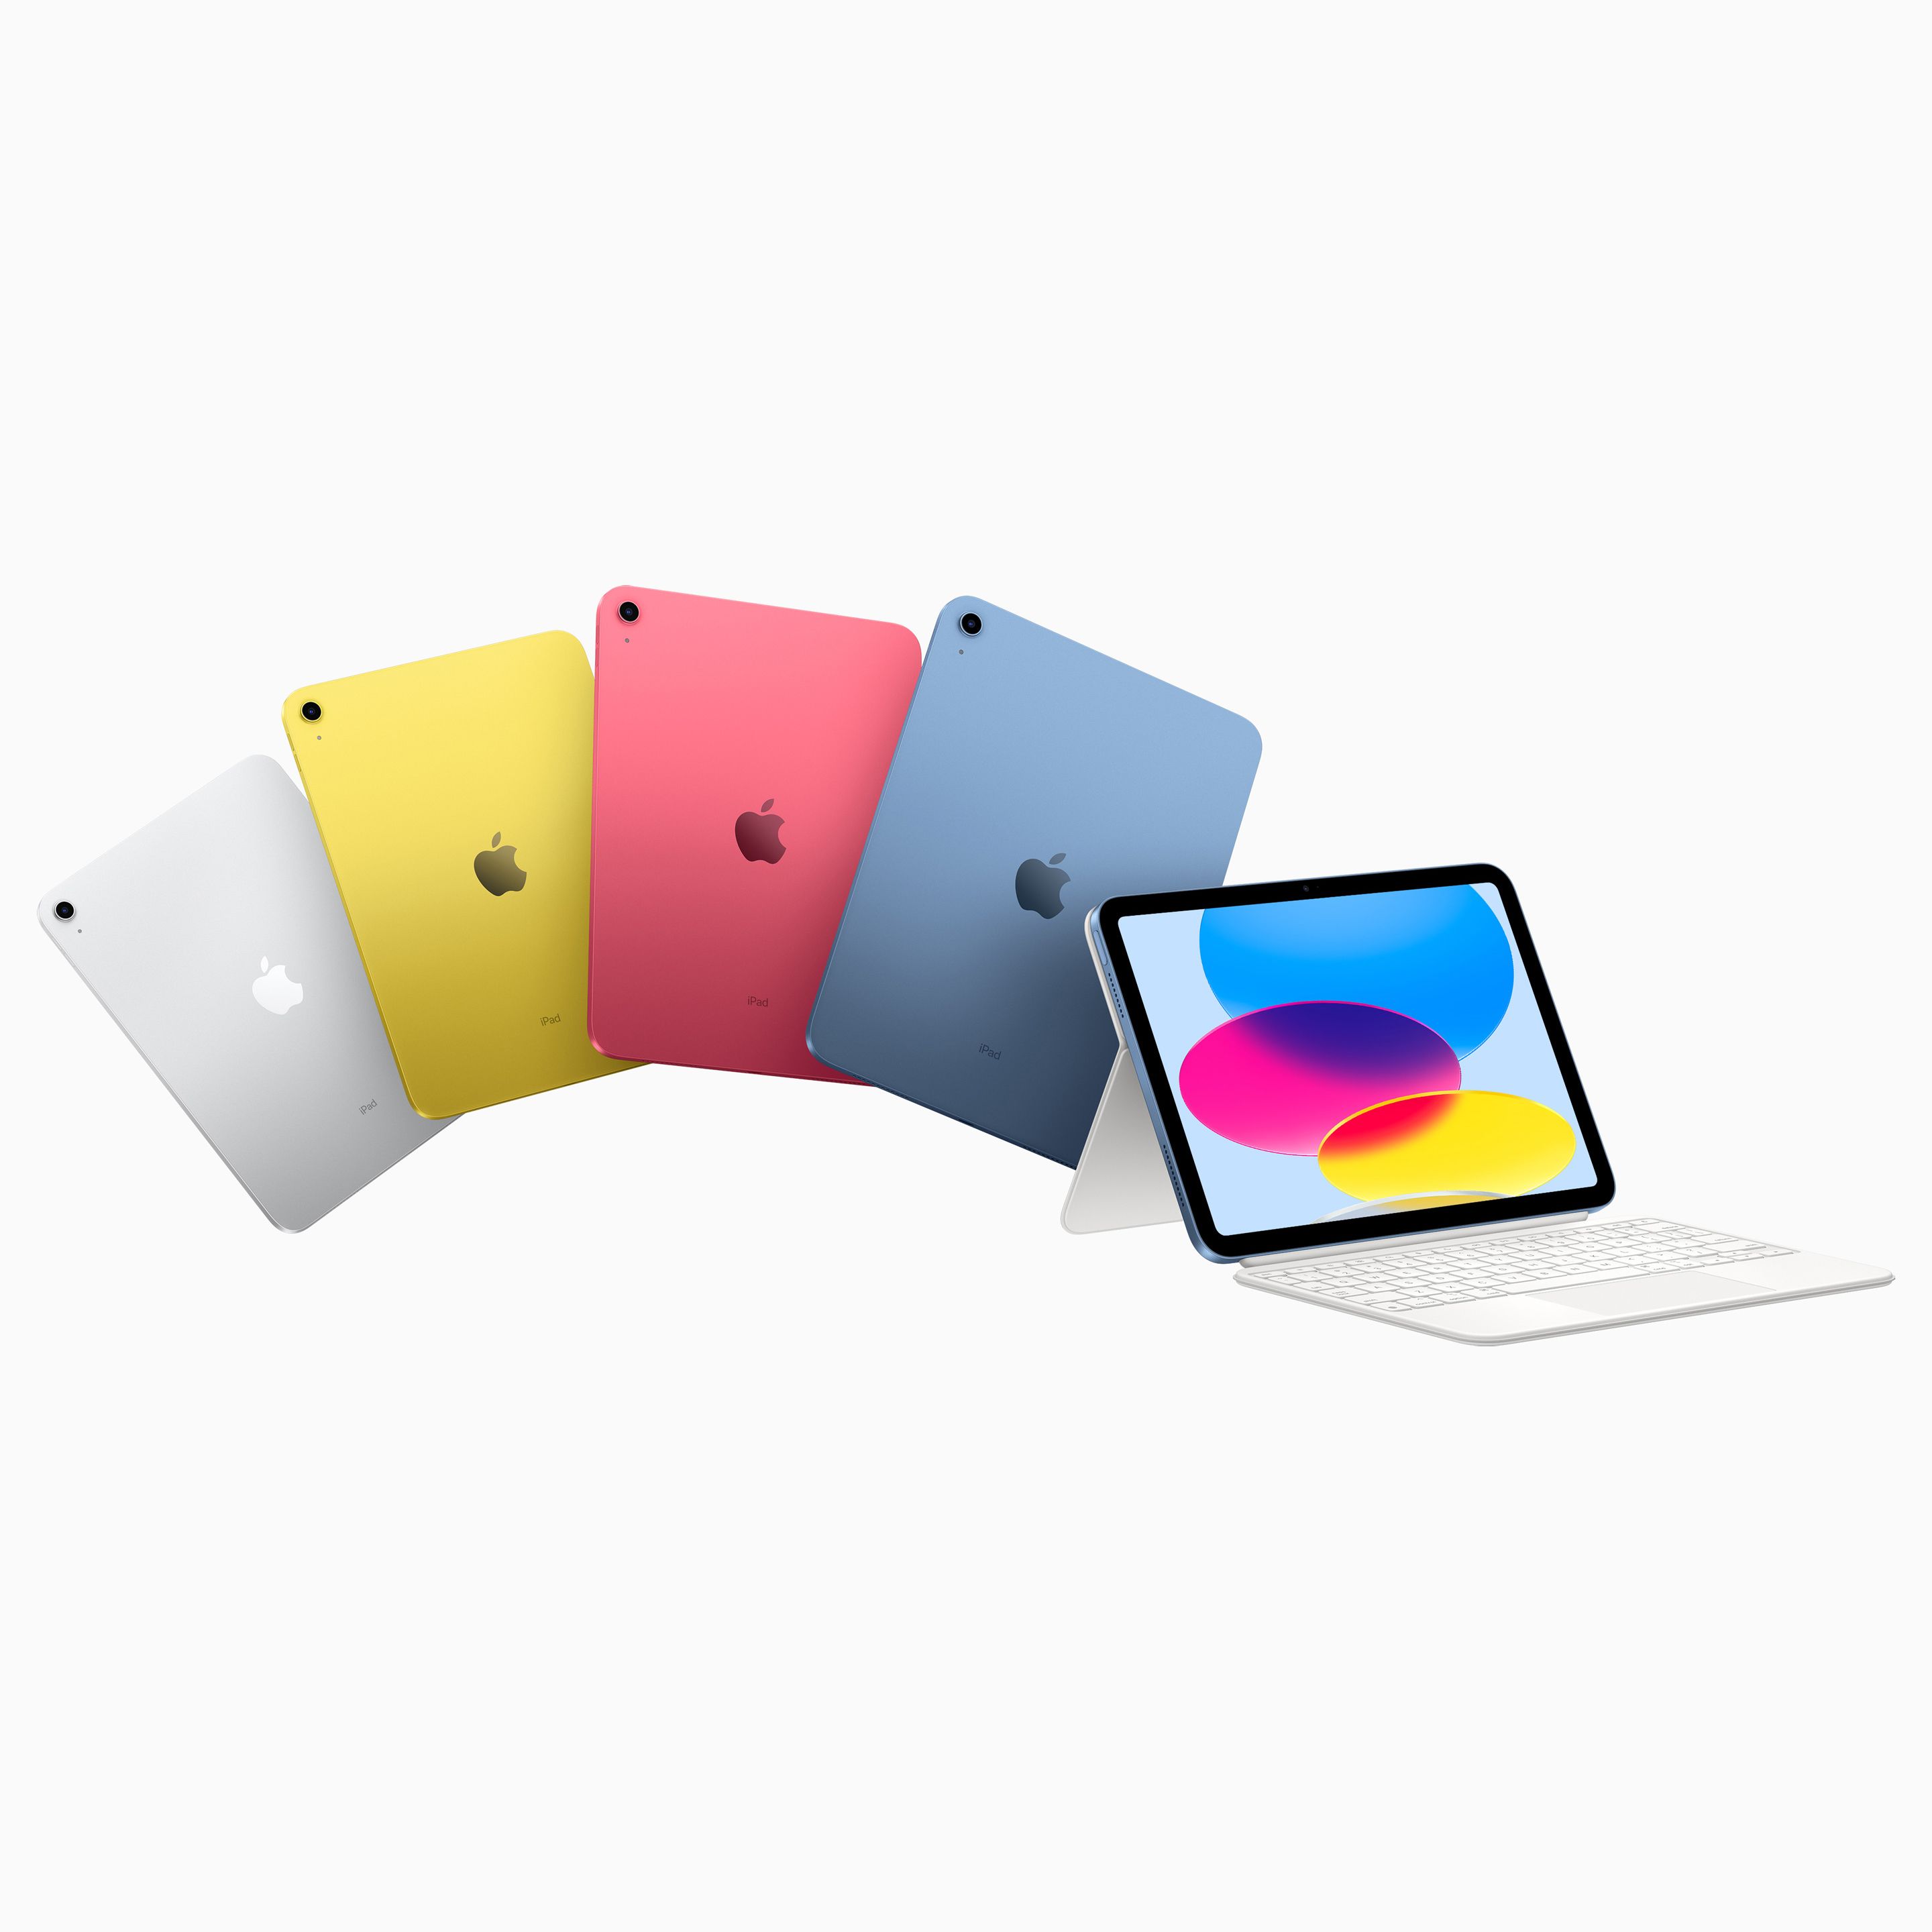 10世代目の”iPad”は、ブルー、ピンク、シルバー、イエロー